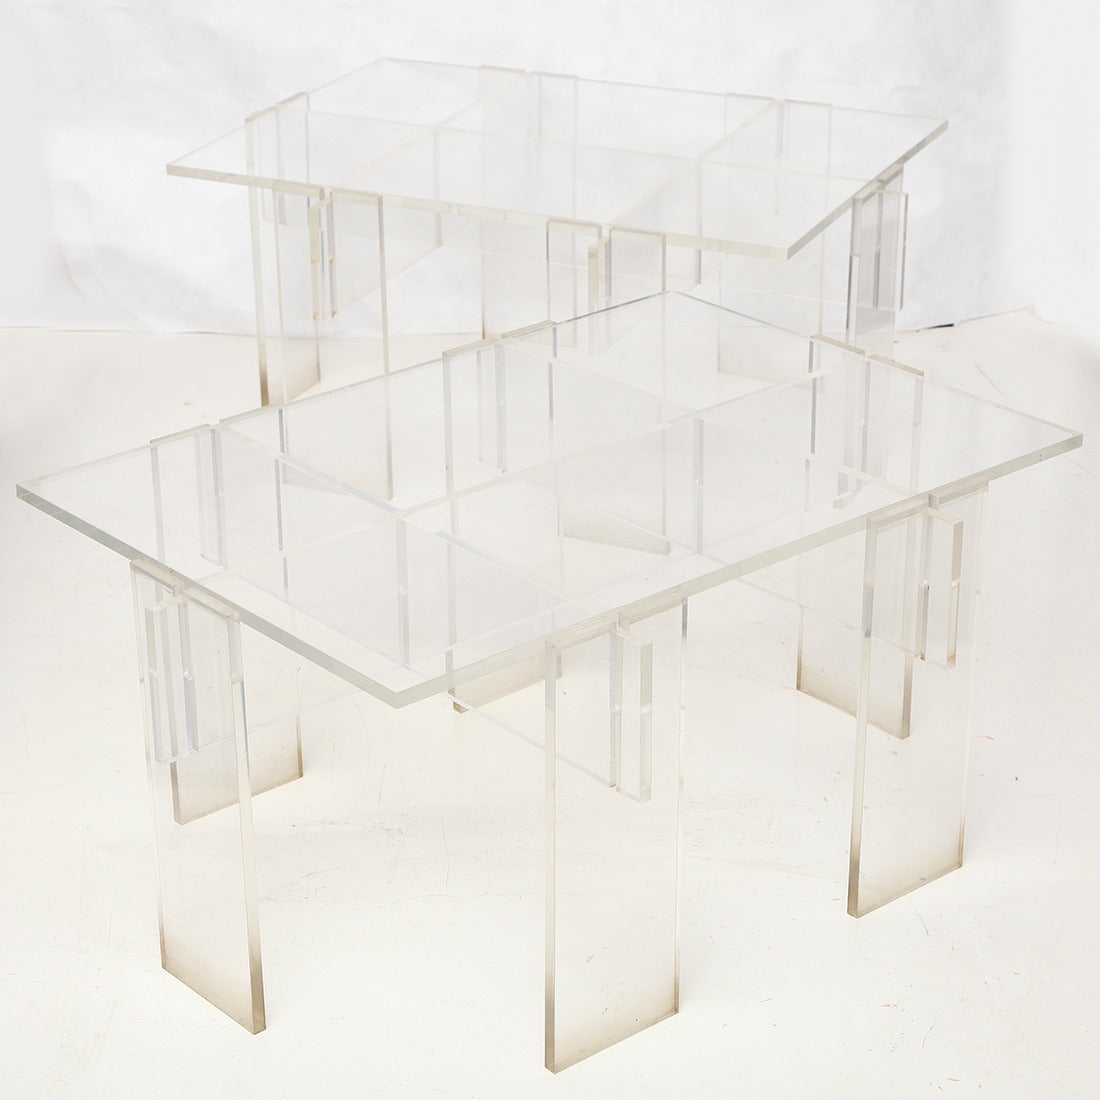 Pair of rectangular low tables consisting of ten interlocking Lucite “puzzle” pieces.
American, circa 1970.